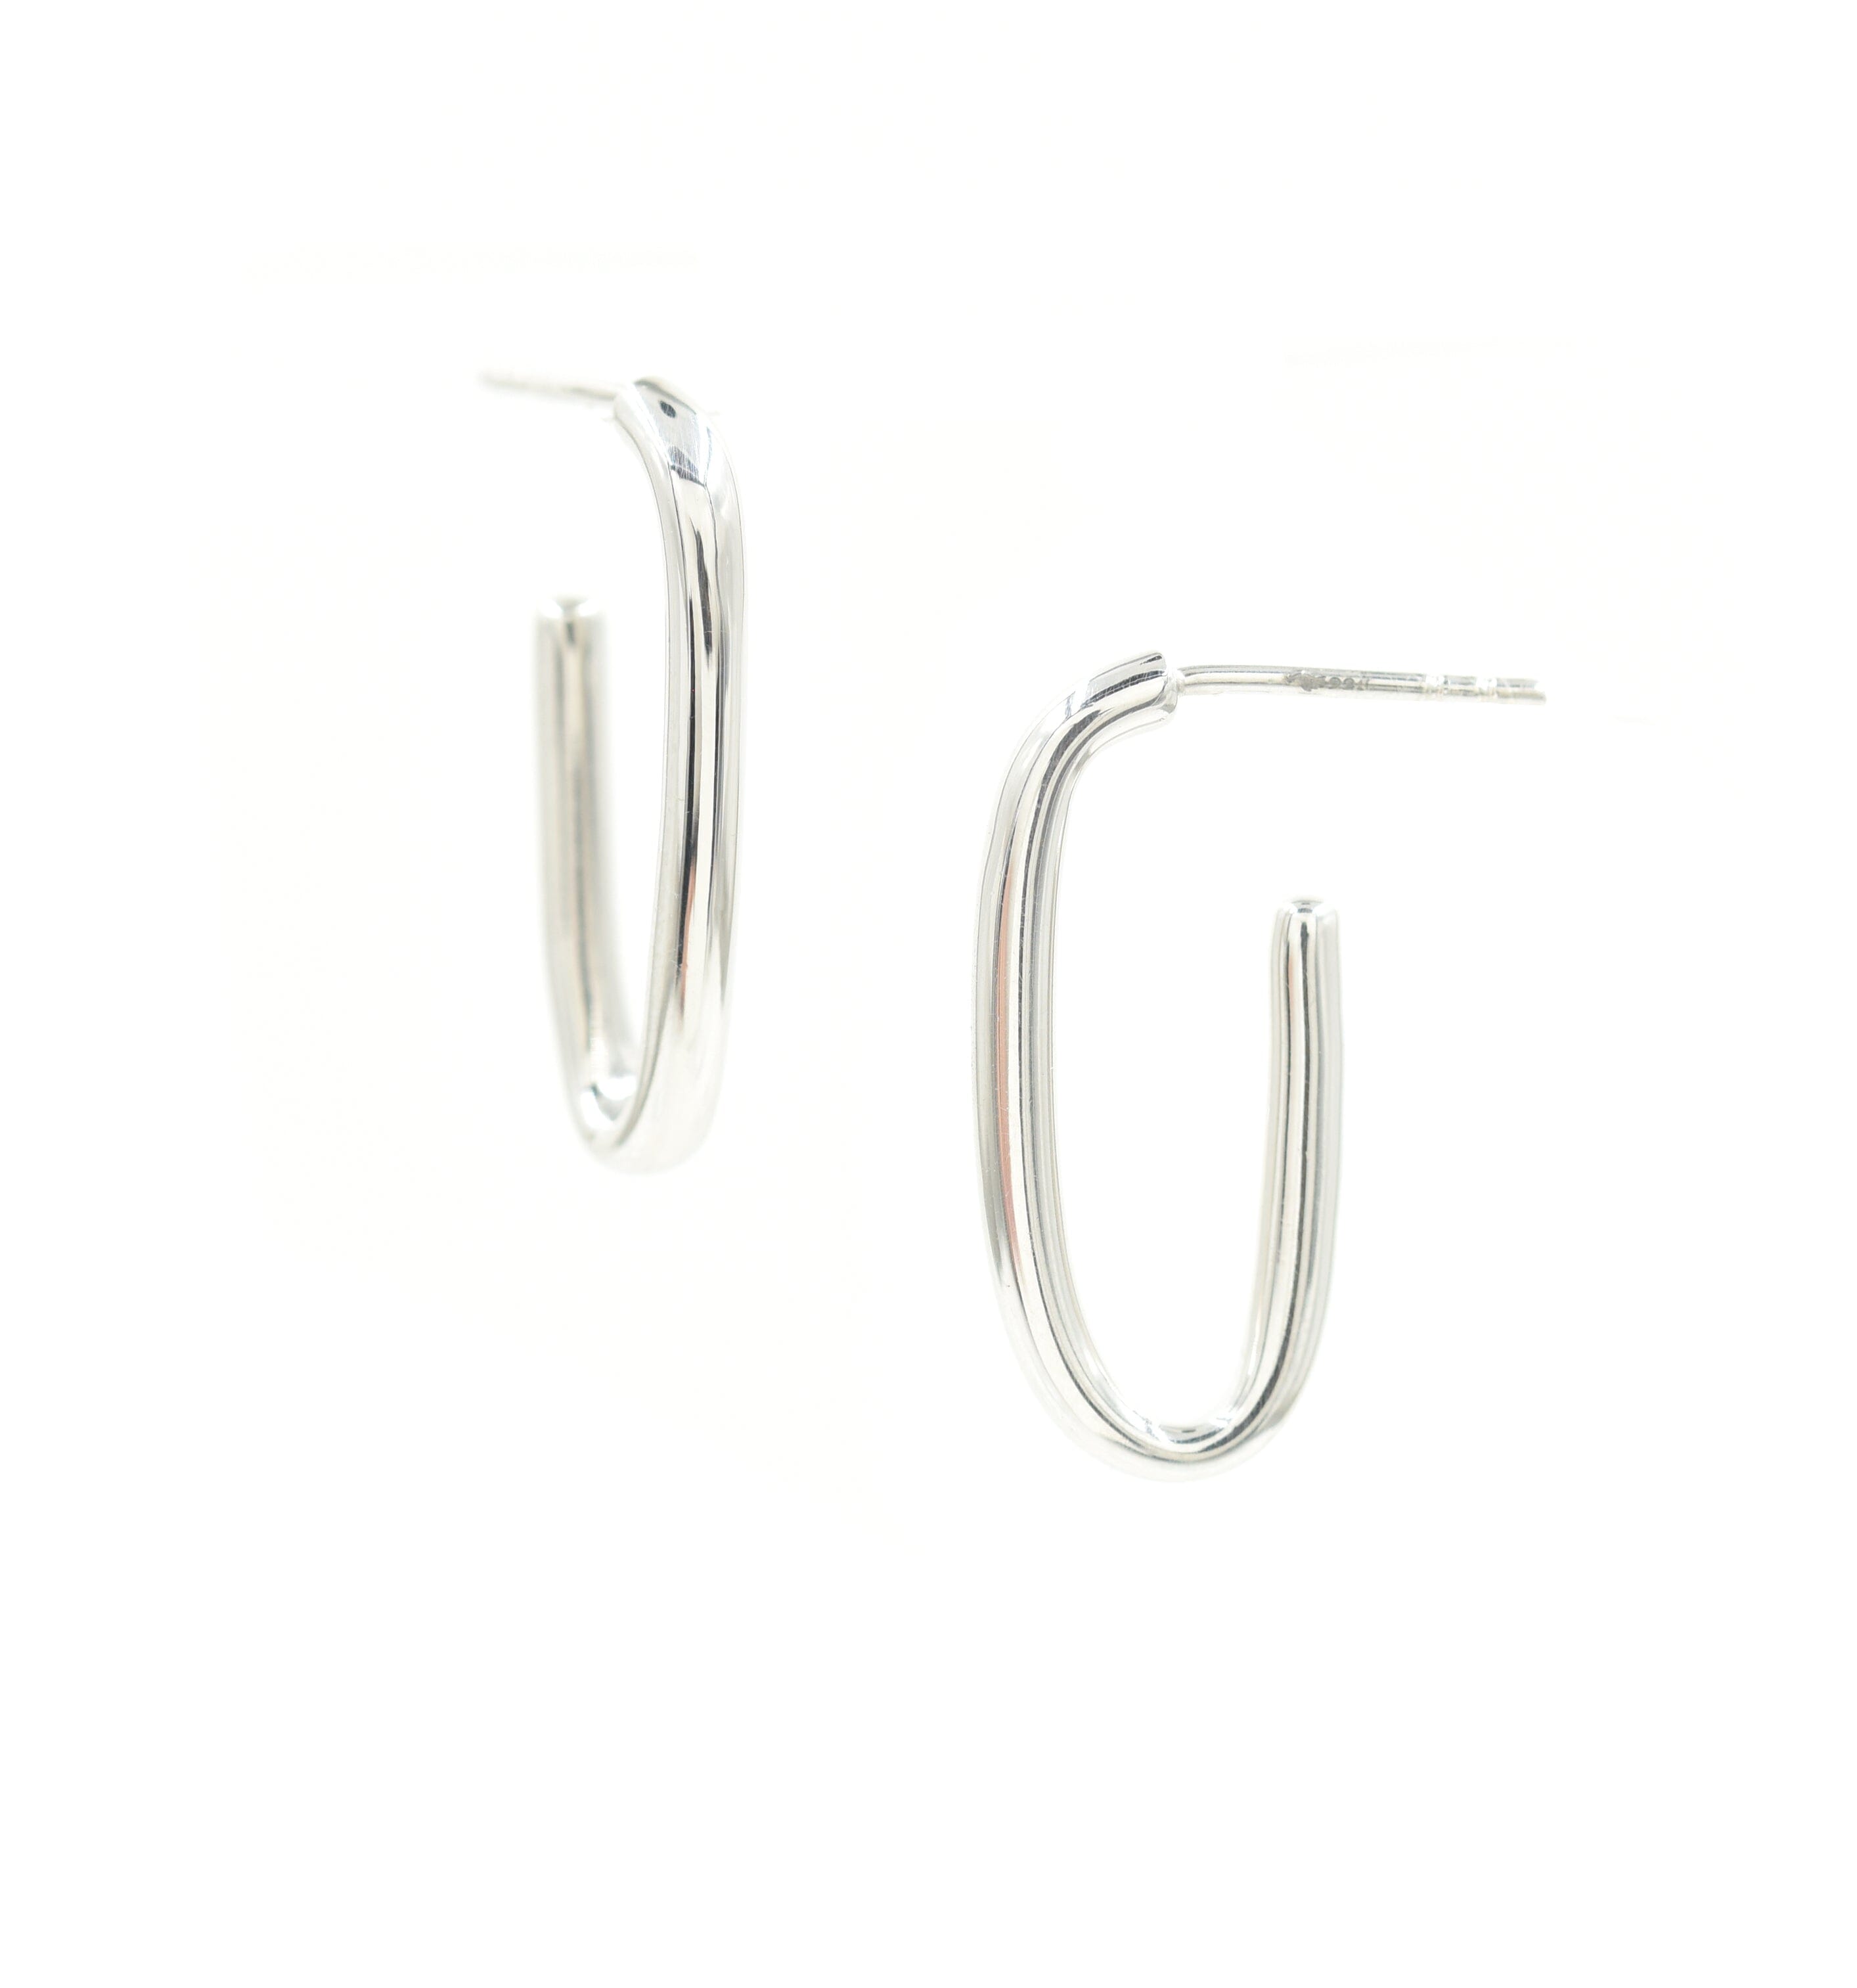 Silver Ice Clip Hoops Earrings - BONDEYE JEWELRY ®